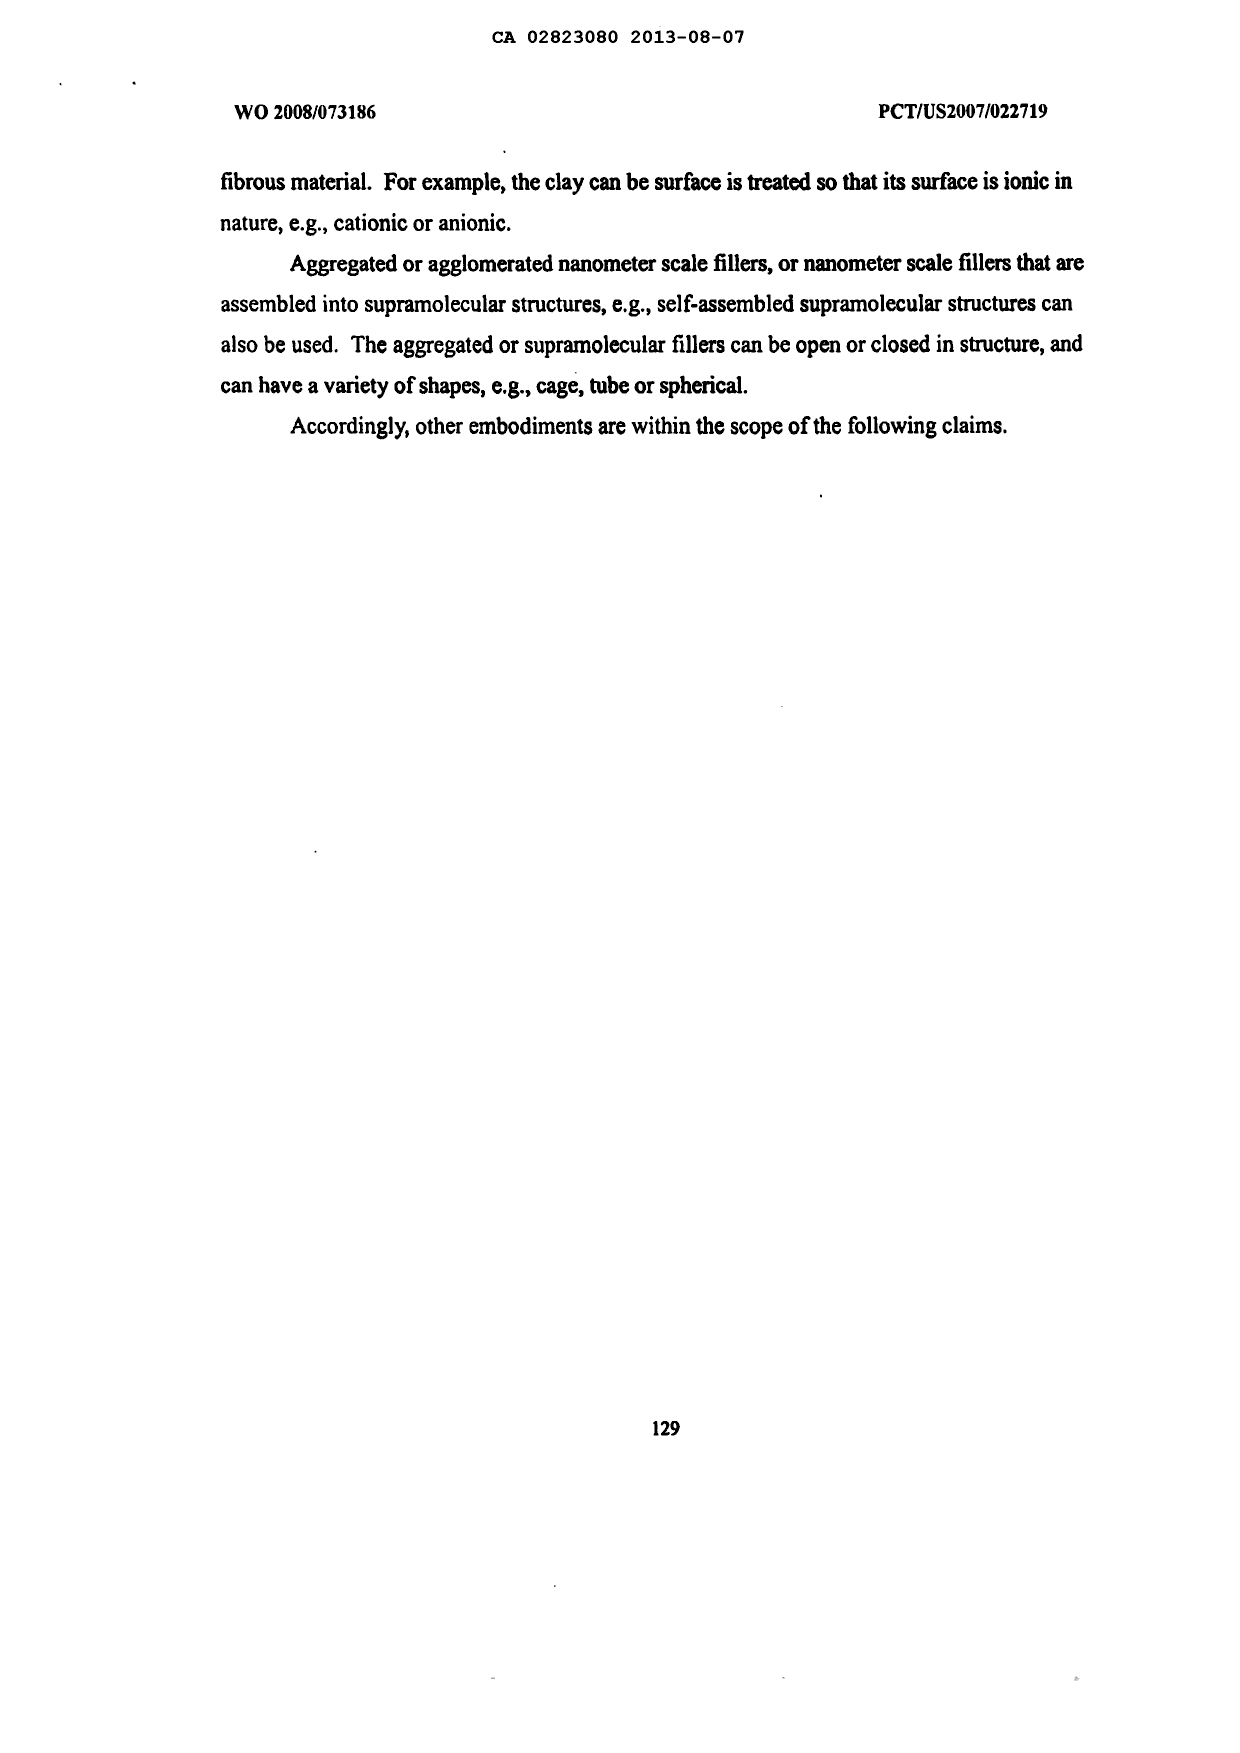 Canadian Patent Document 2823080. Description 20121207. Image 130 of 130